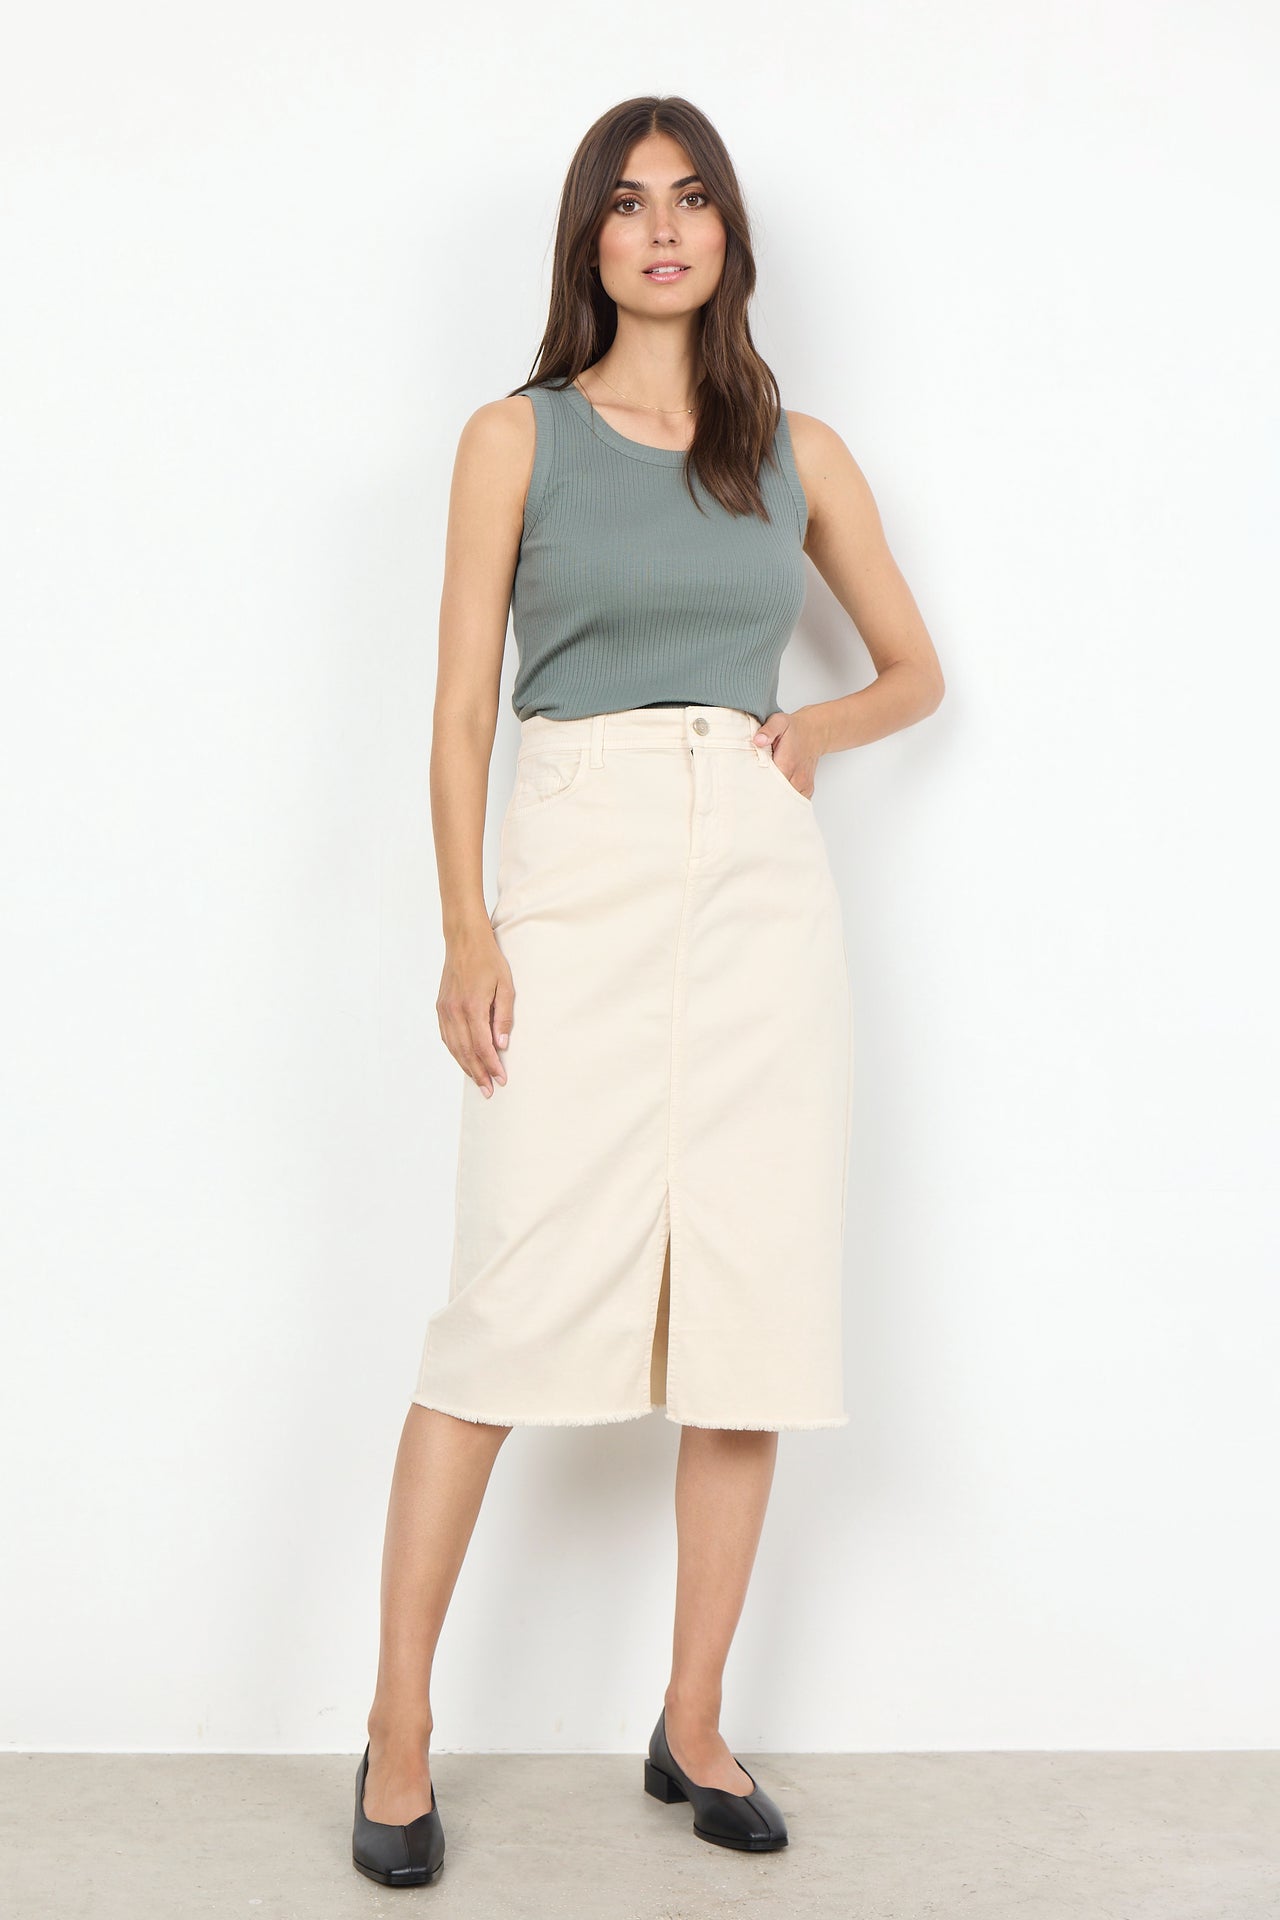 Soya Concept Erna Cream Skirt